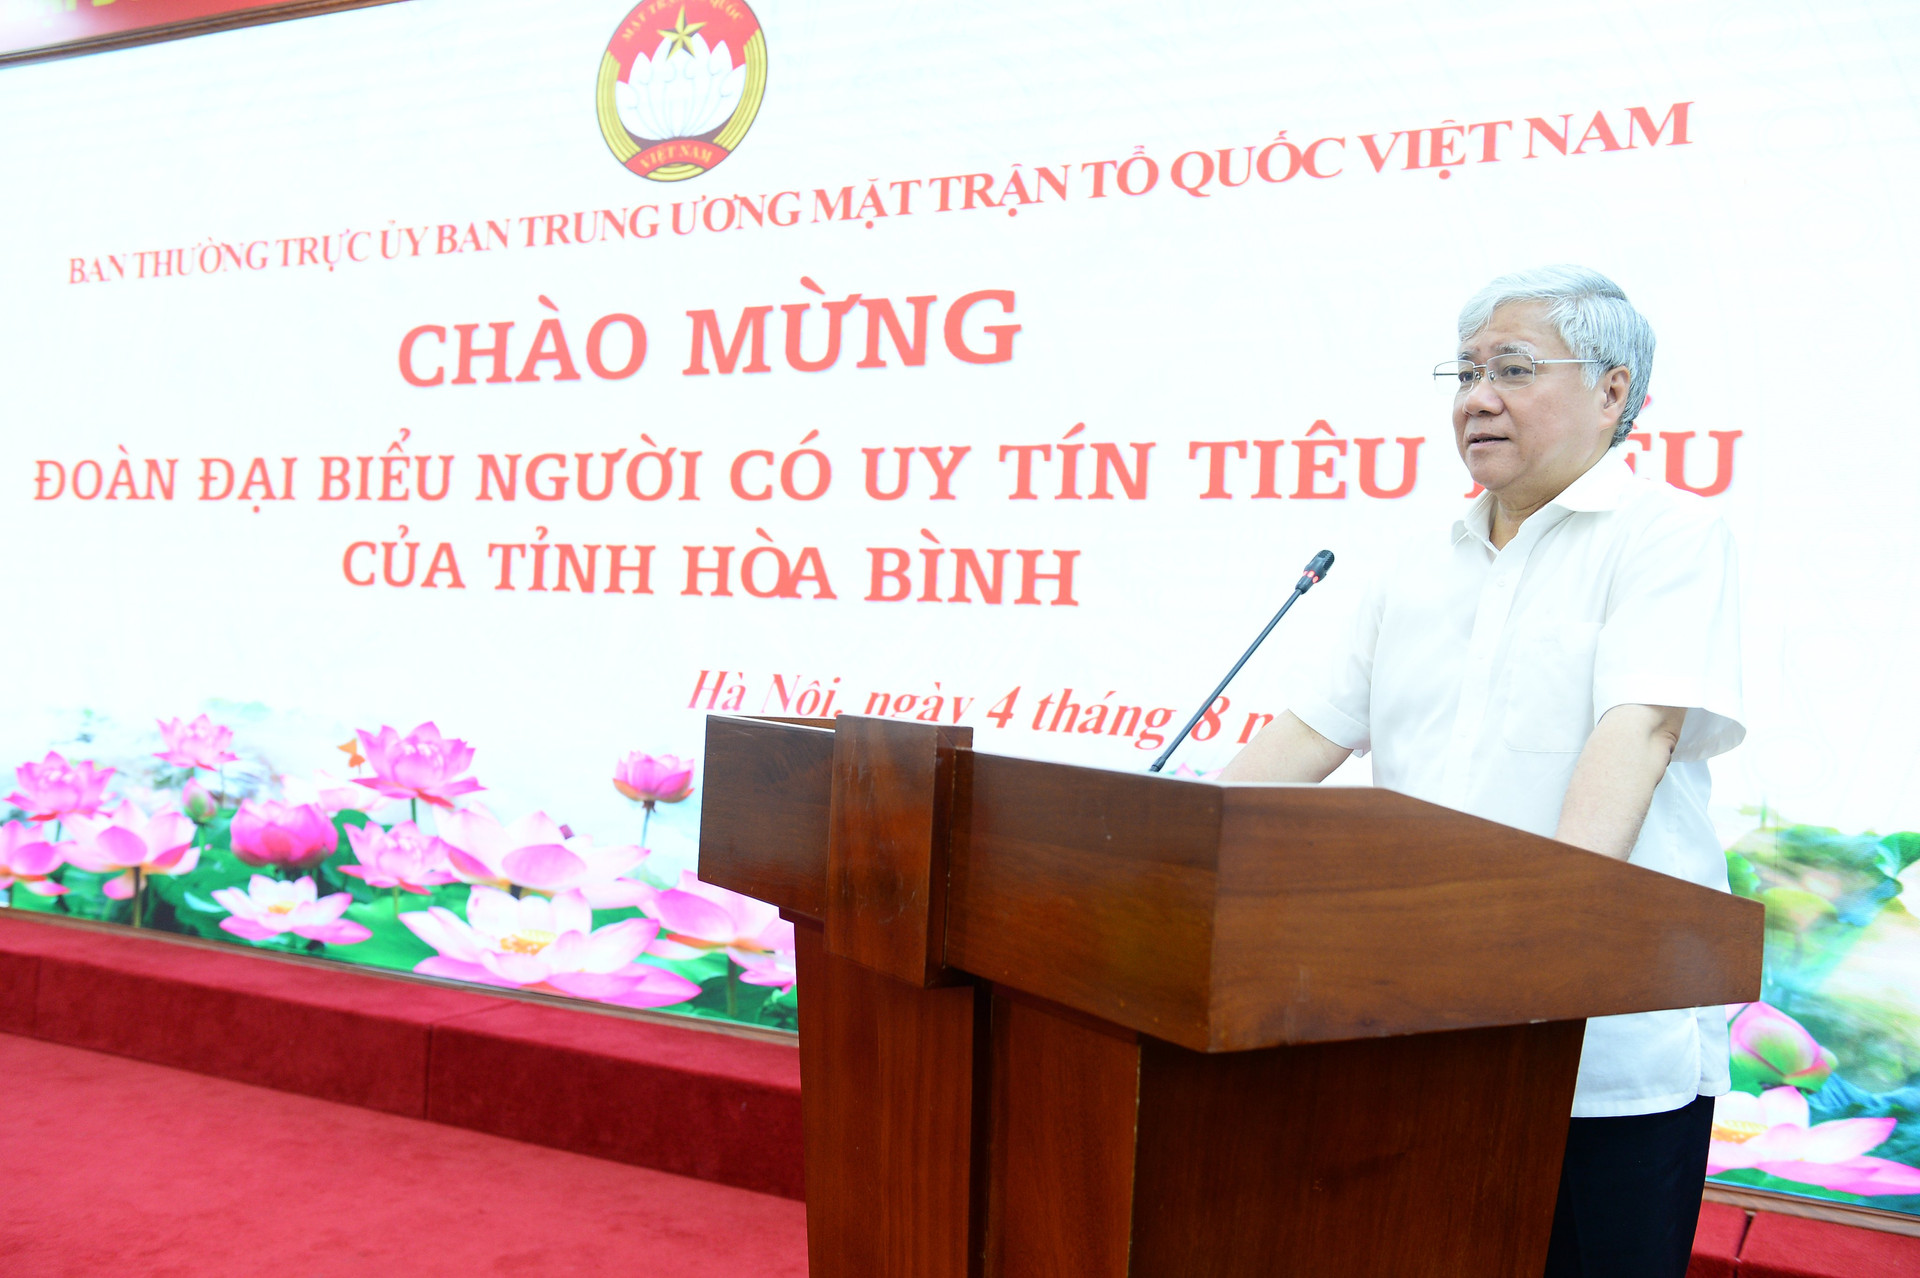 Chủ tịch Đỗ Văn Chiến phát biểu tại buổi gặp mặt người uy tín tiêu biểu tỉnh Hòa Bình.